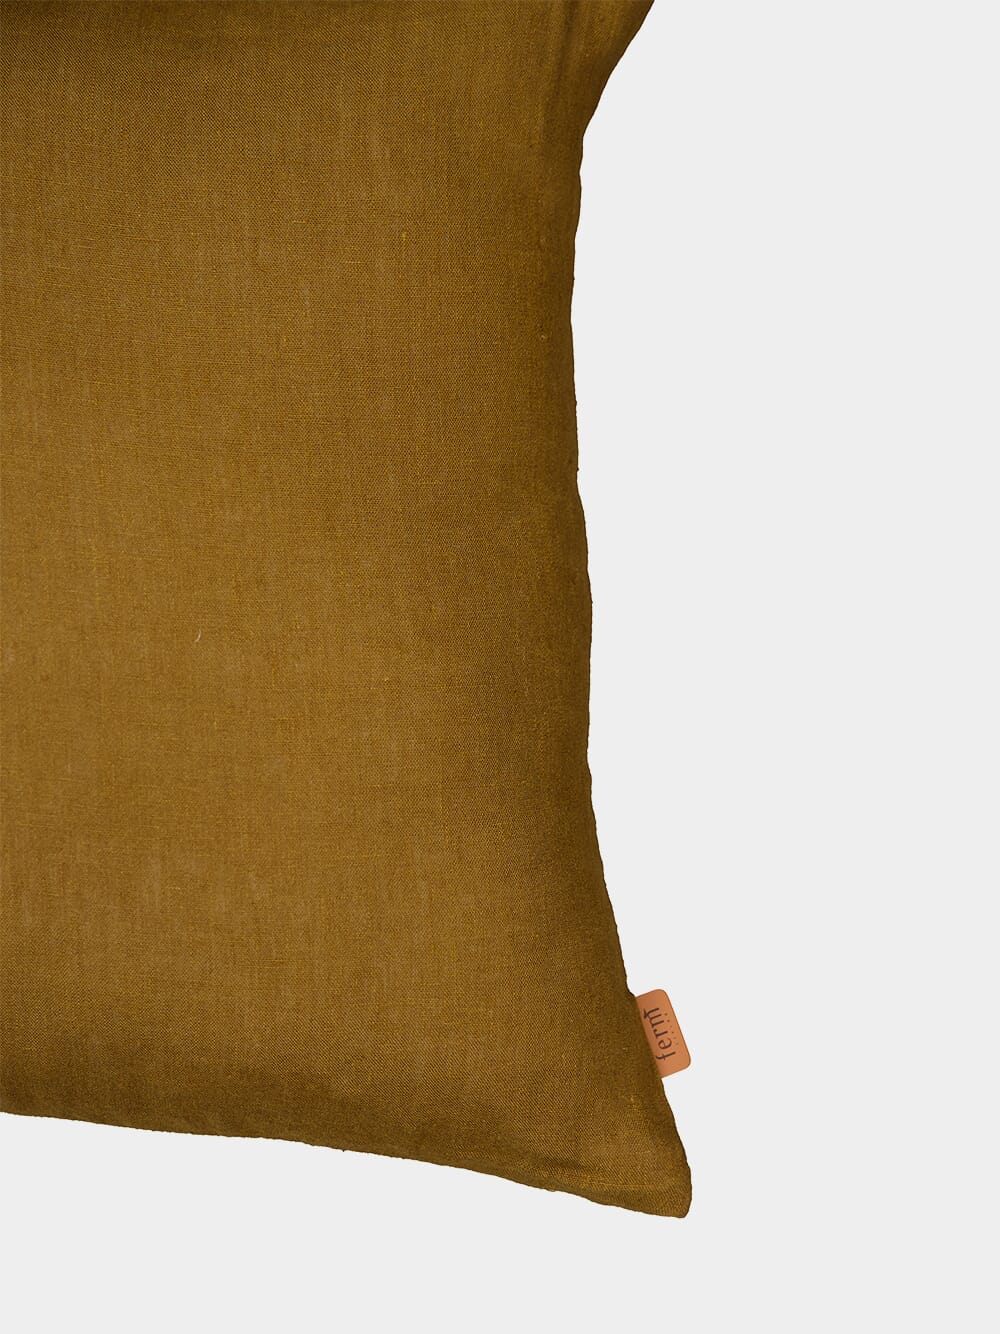 Brown Linen Cushion